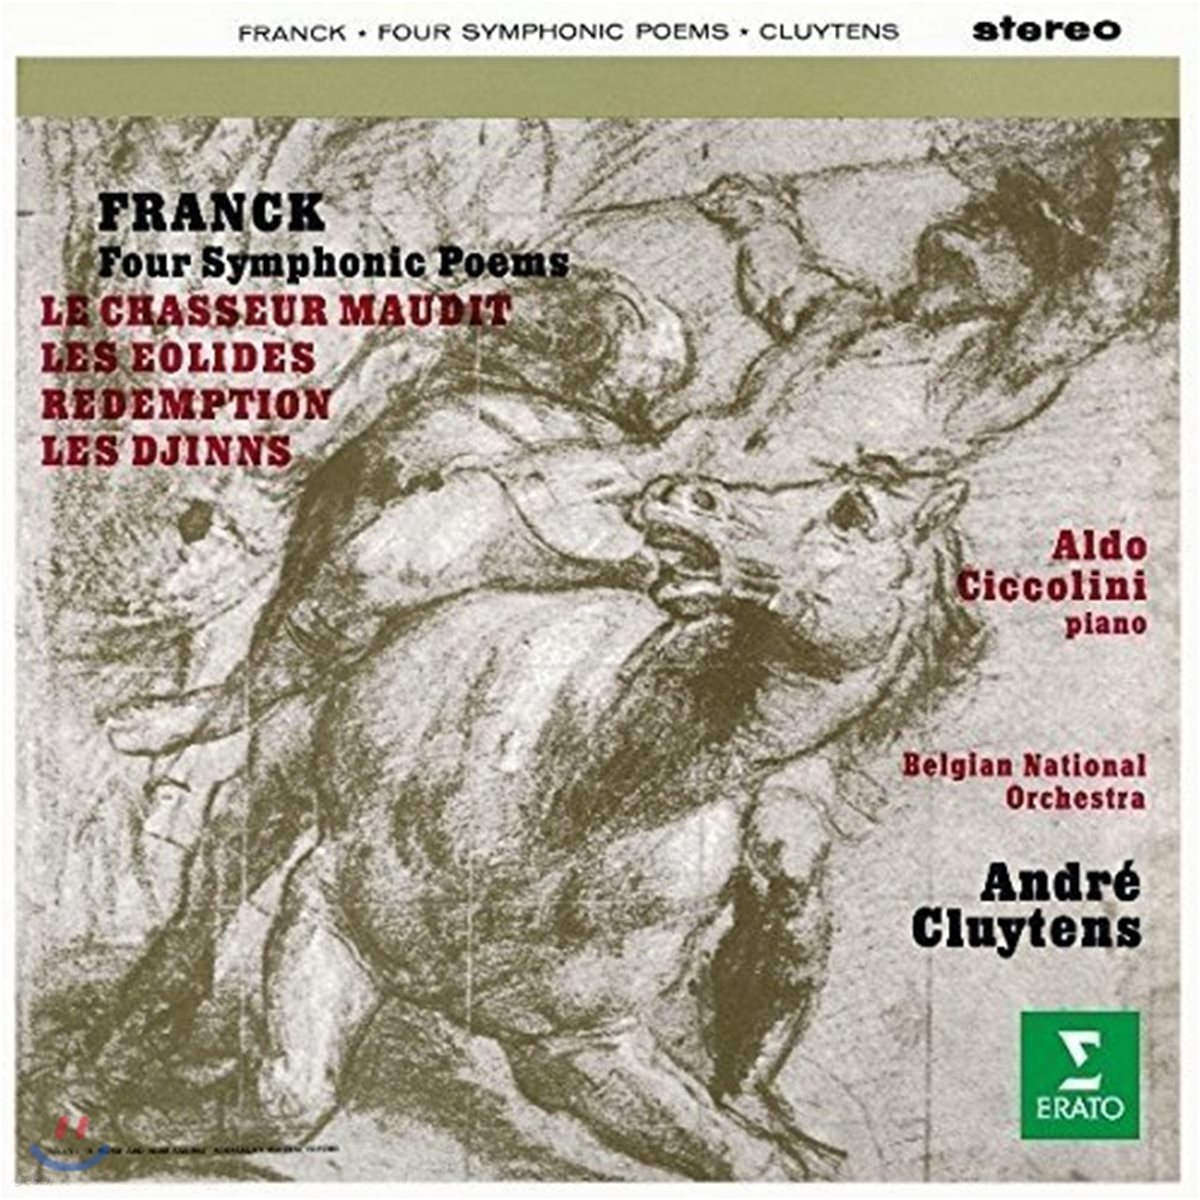 Andre Cluytens 프랑크: 교향시 &#39;저주받은 사냥꾼&#39;, &#39;에올리드&#39;, &#39;구원&#39;, &#39;귀신&#39; (Franck: Four Symphonic Poems)